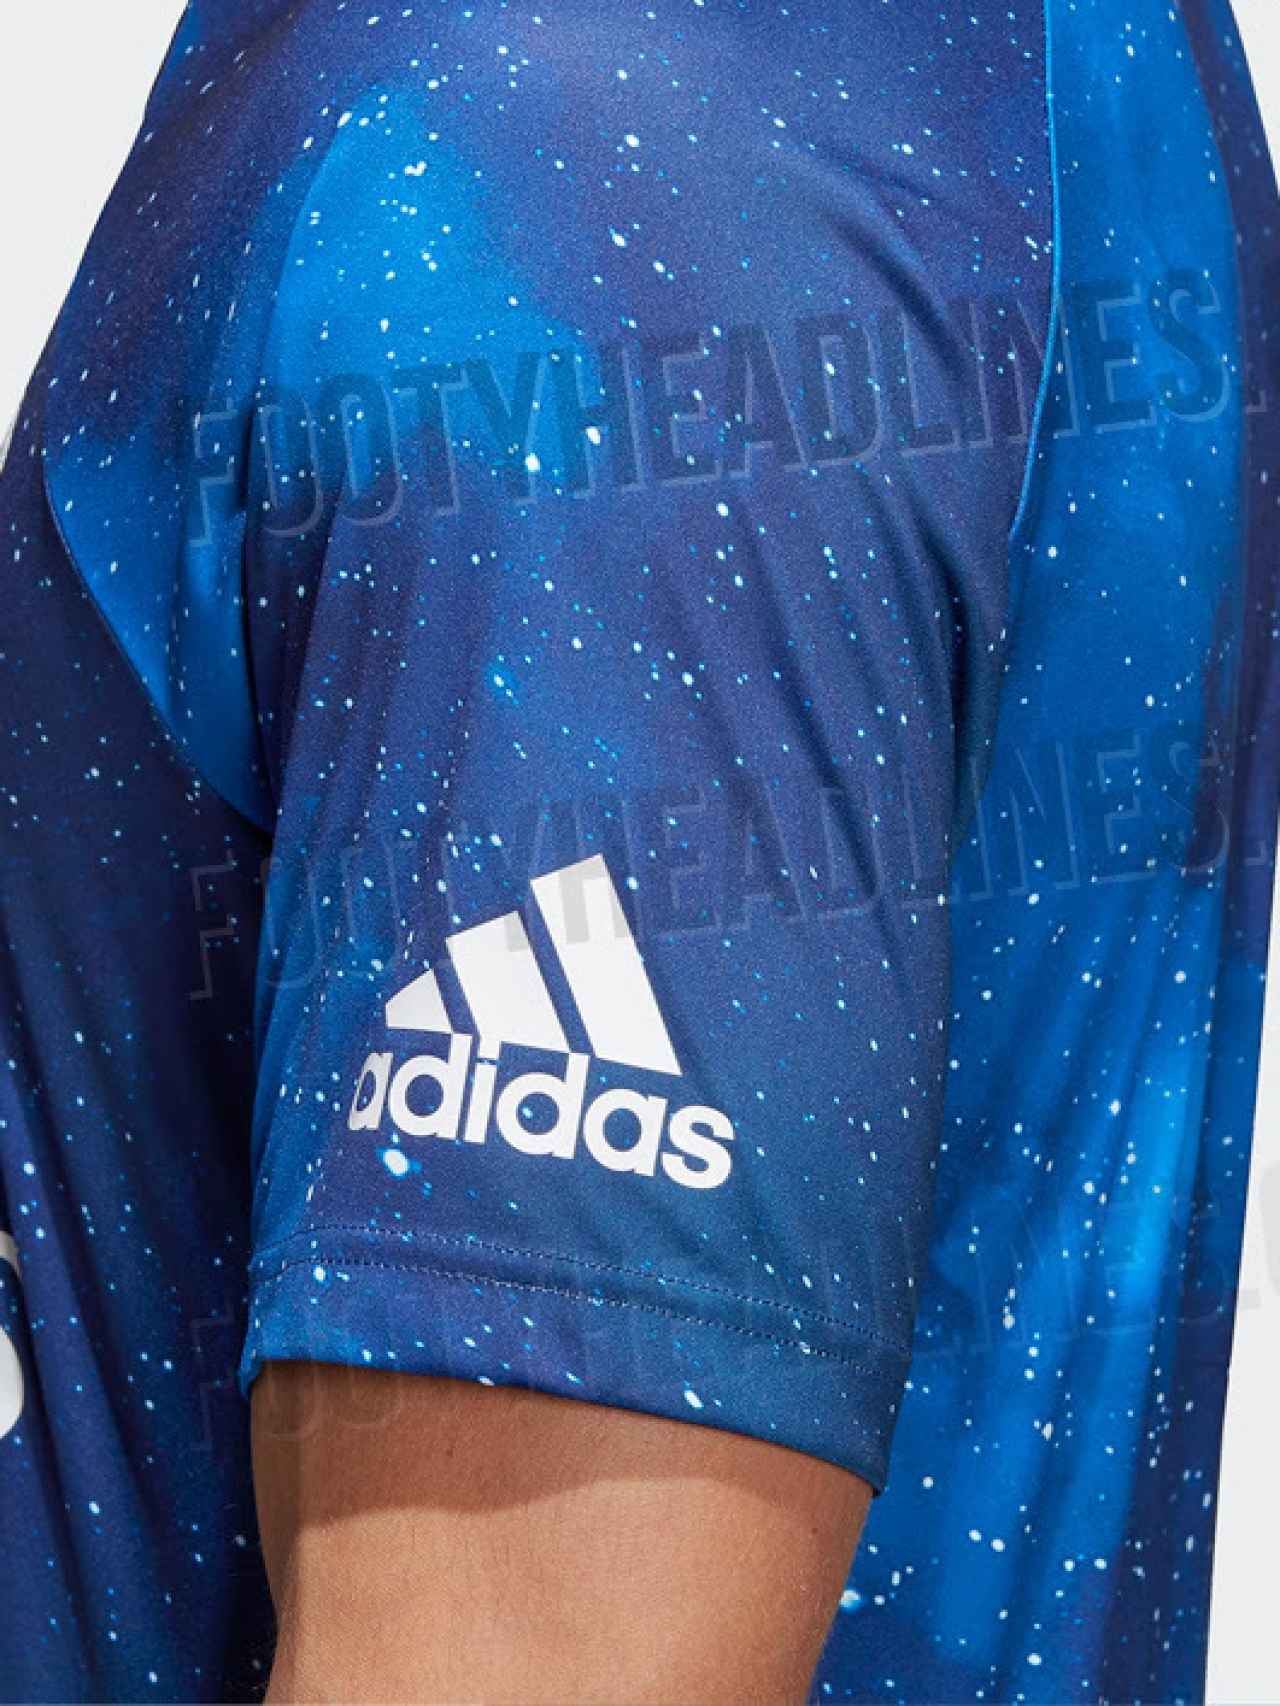 petrolero Ventilar Calendario EA Sports y Adidas diseñan la camiseta más galáctica del Real Madrid